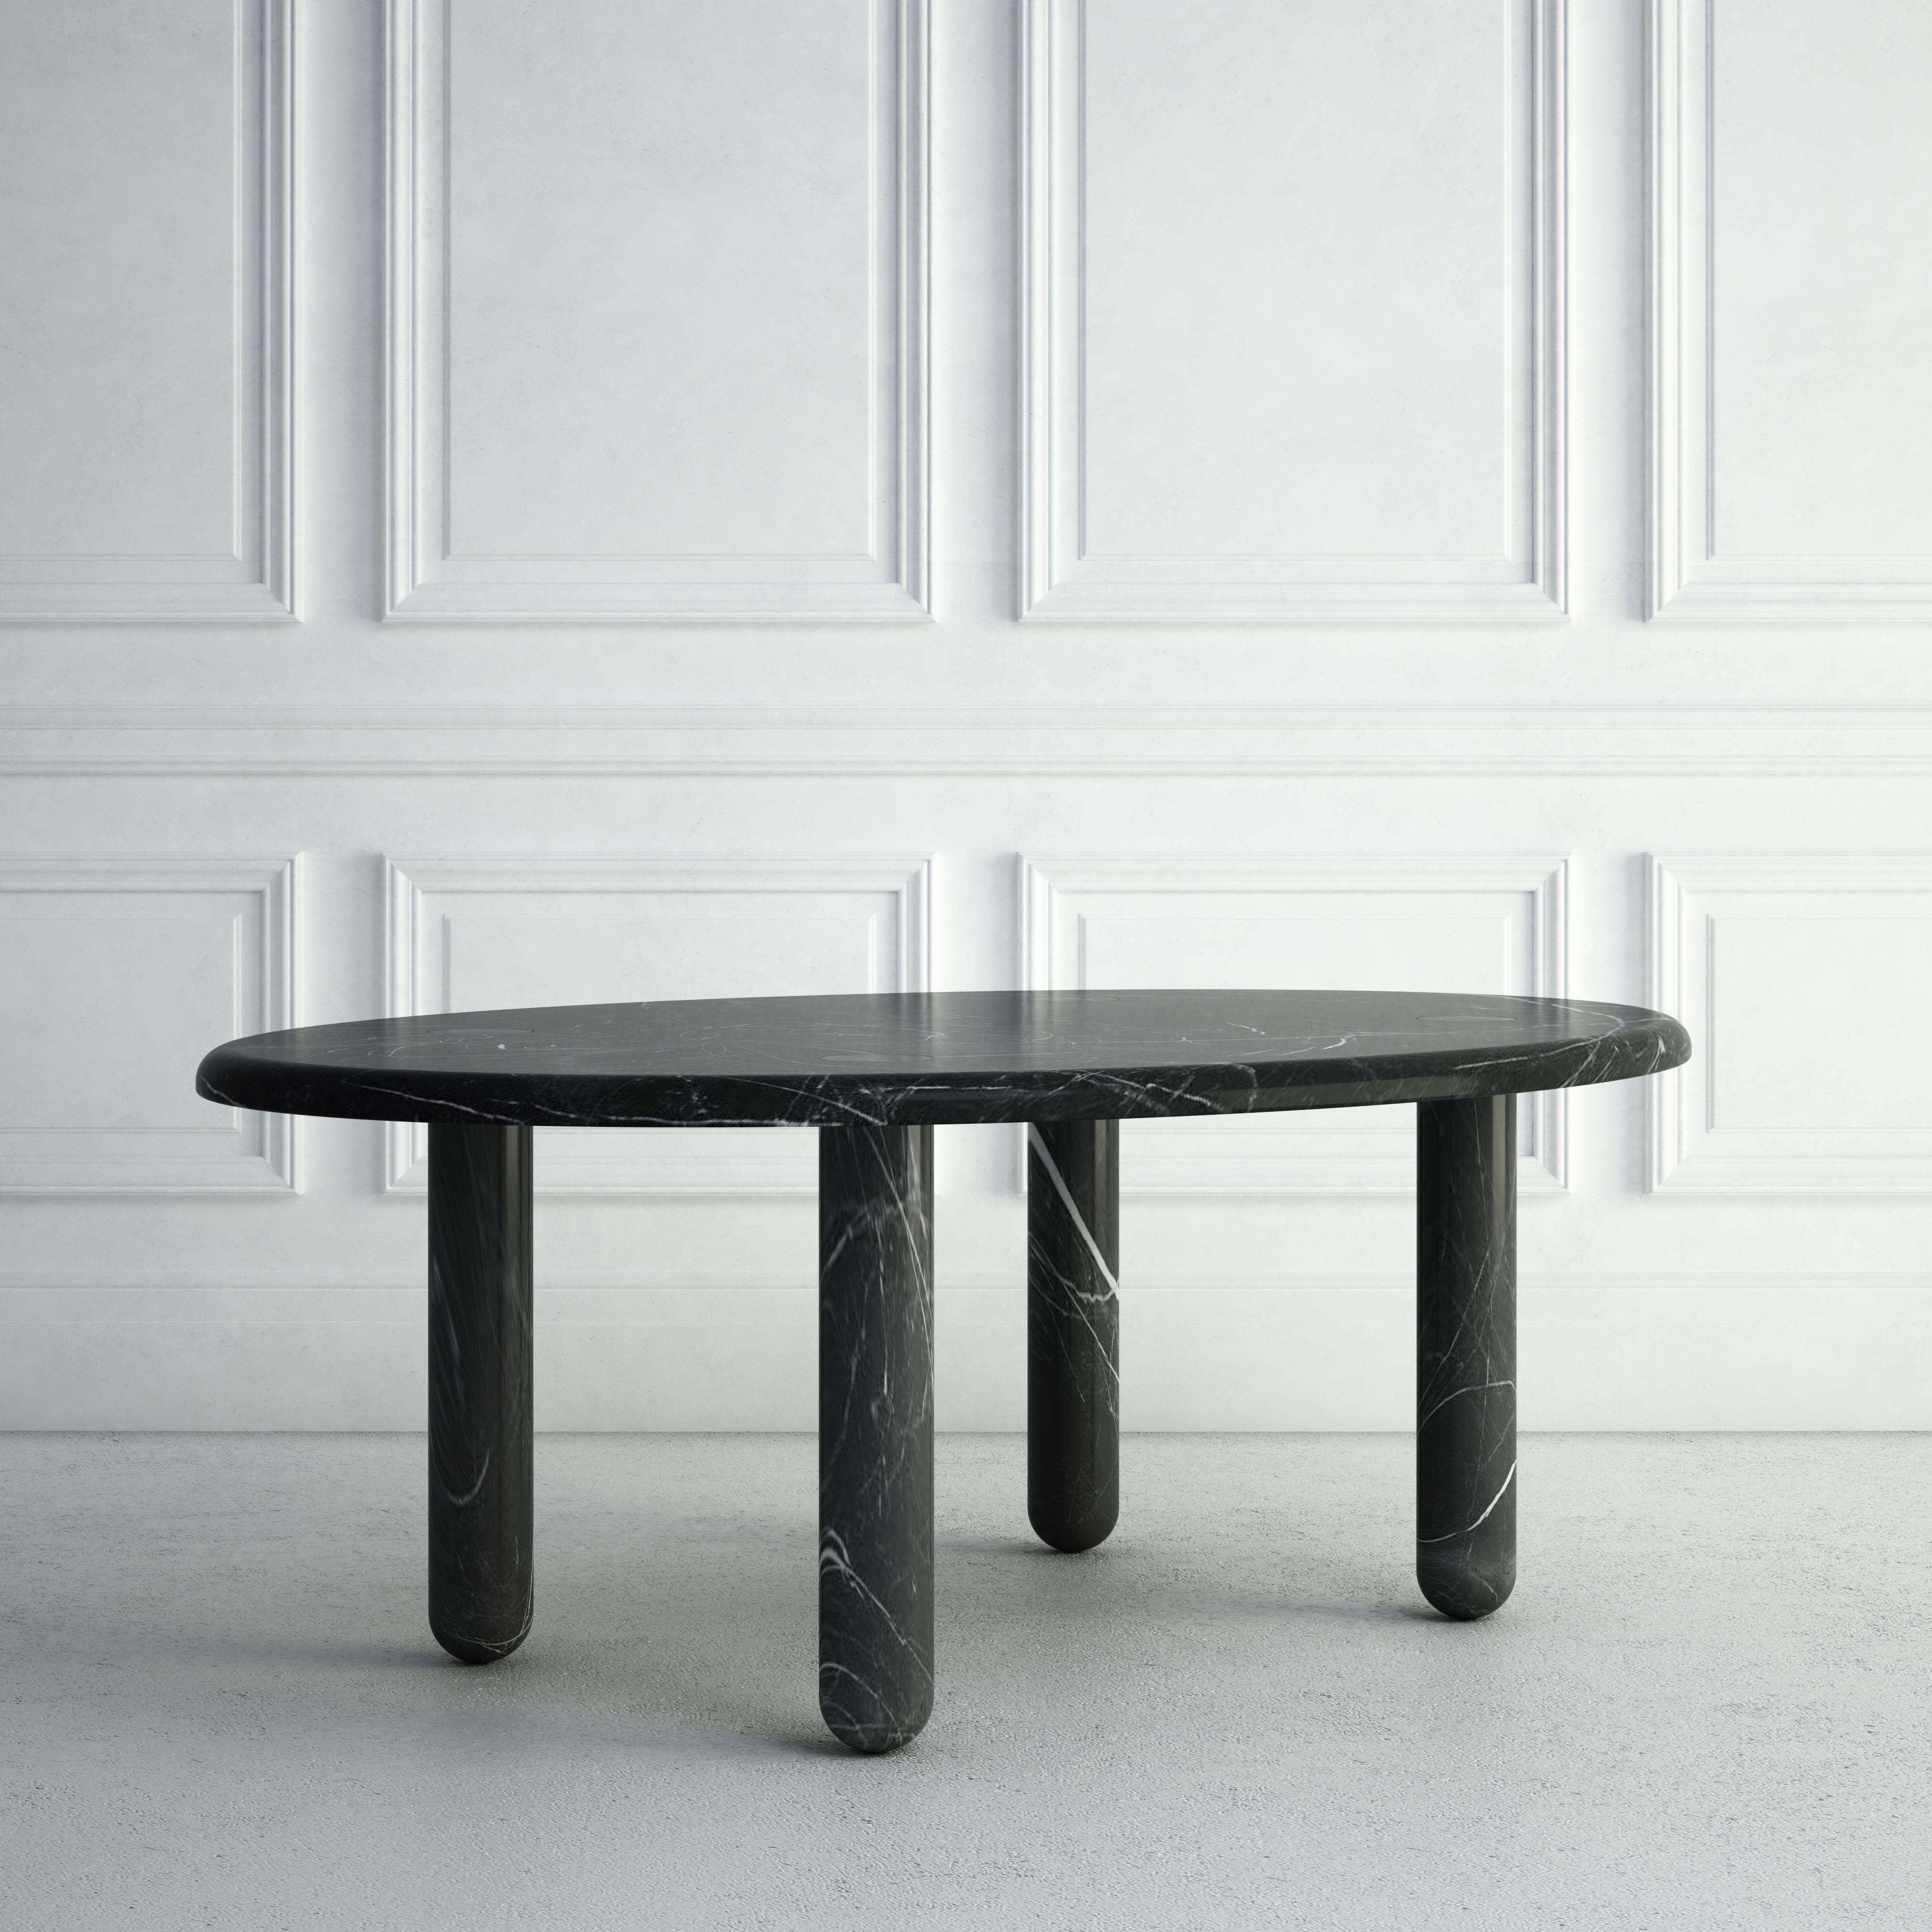 La Delphine est une table de salle à manger moderne et gracieuse. Le dessus est une dalle de pierre ovale sculptée, avec des bordures subtiles. Chacun des quatre pieds est sculpté dans une forme cylindrique fine, dont le bas est légèrement arrondi.